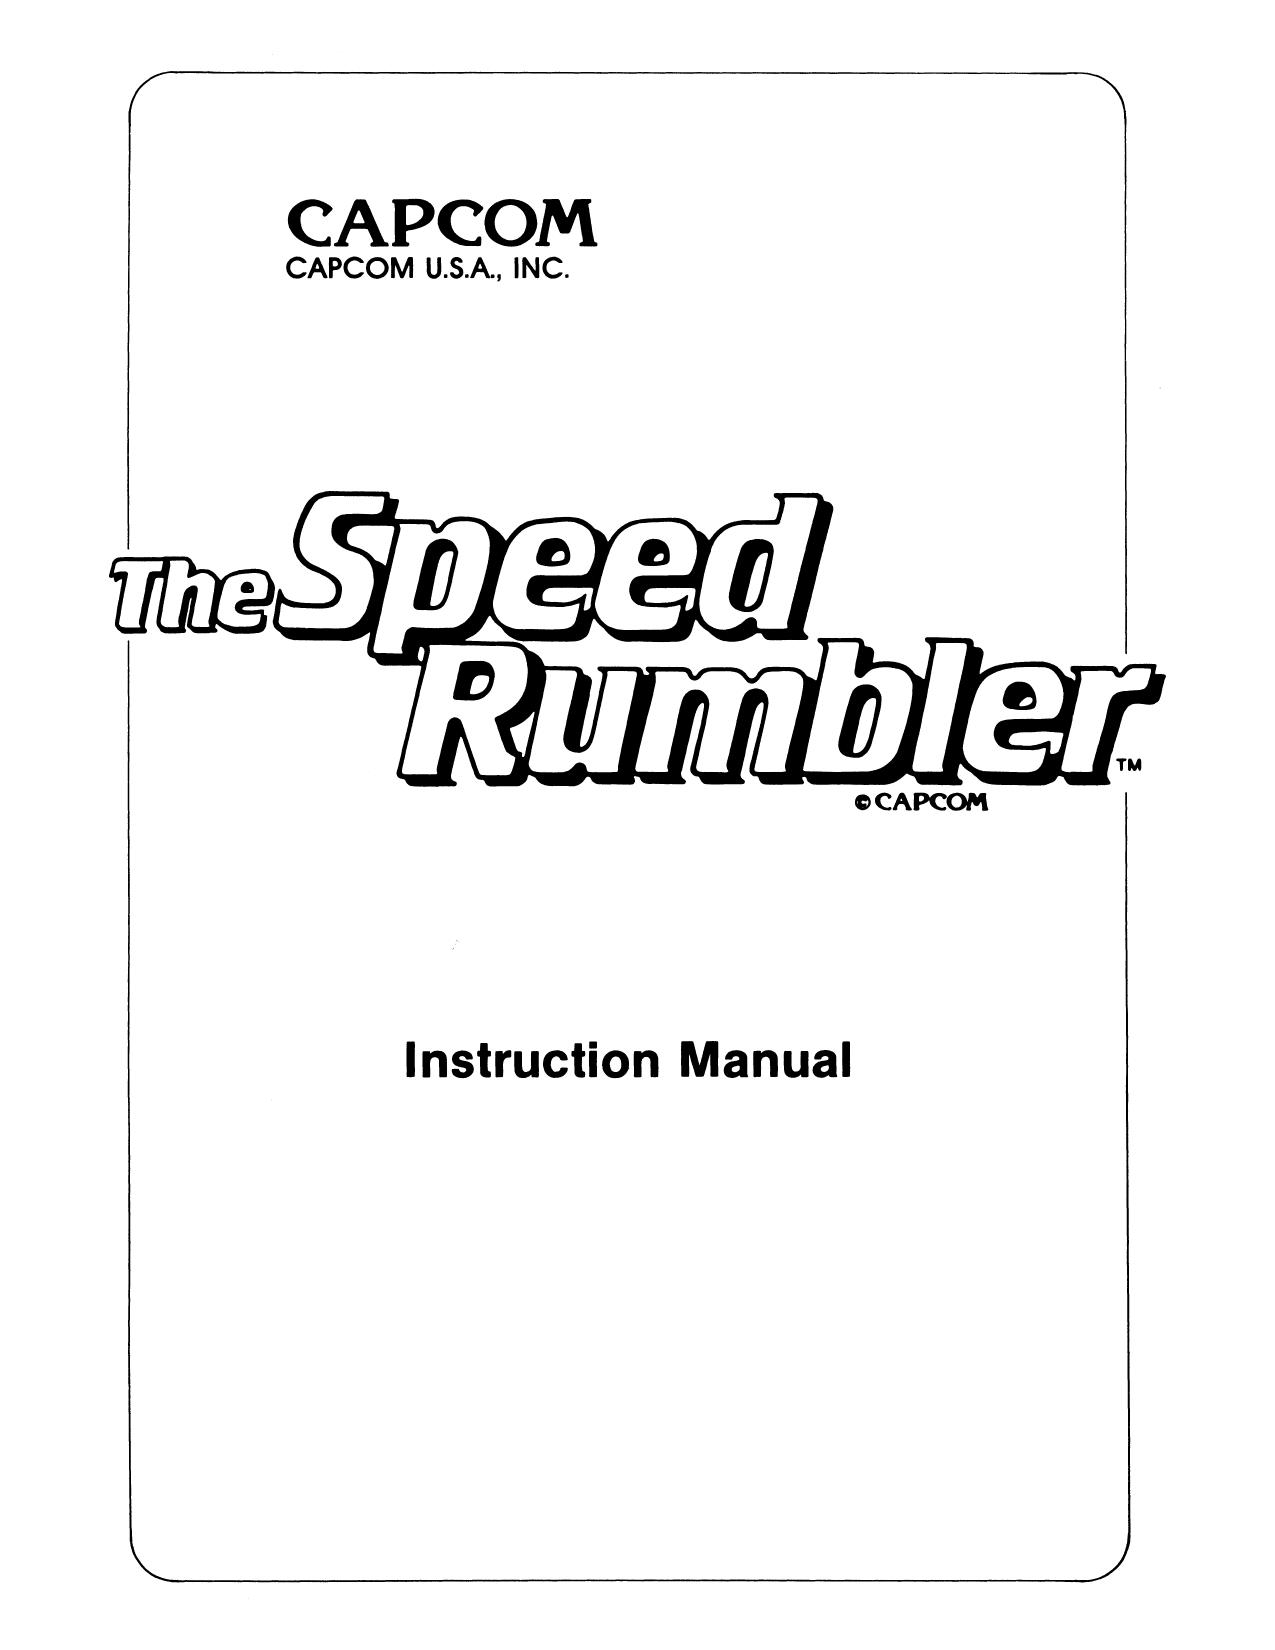 Speed Rumbler